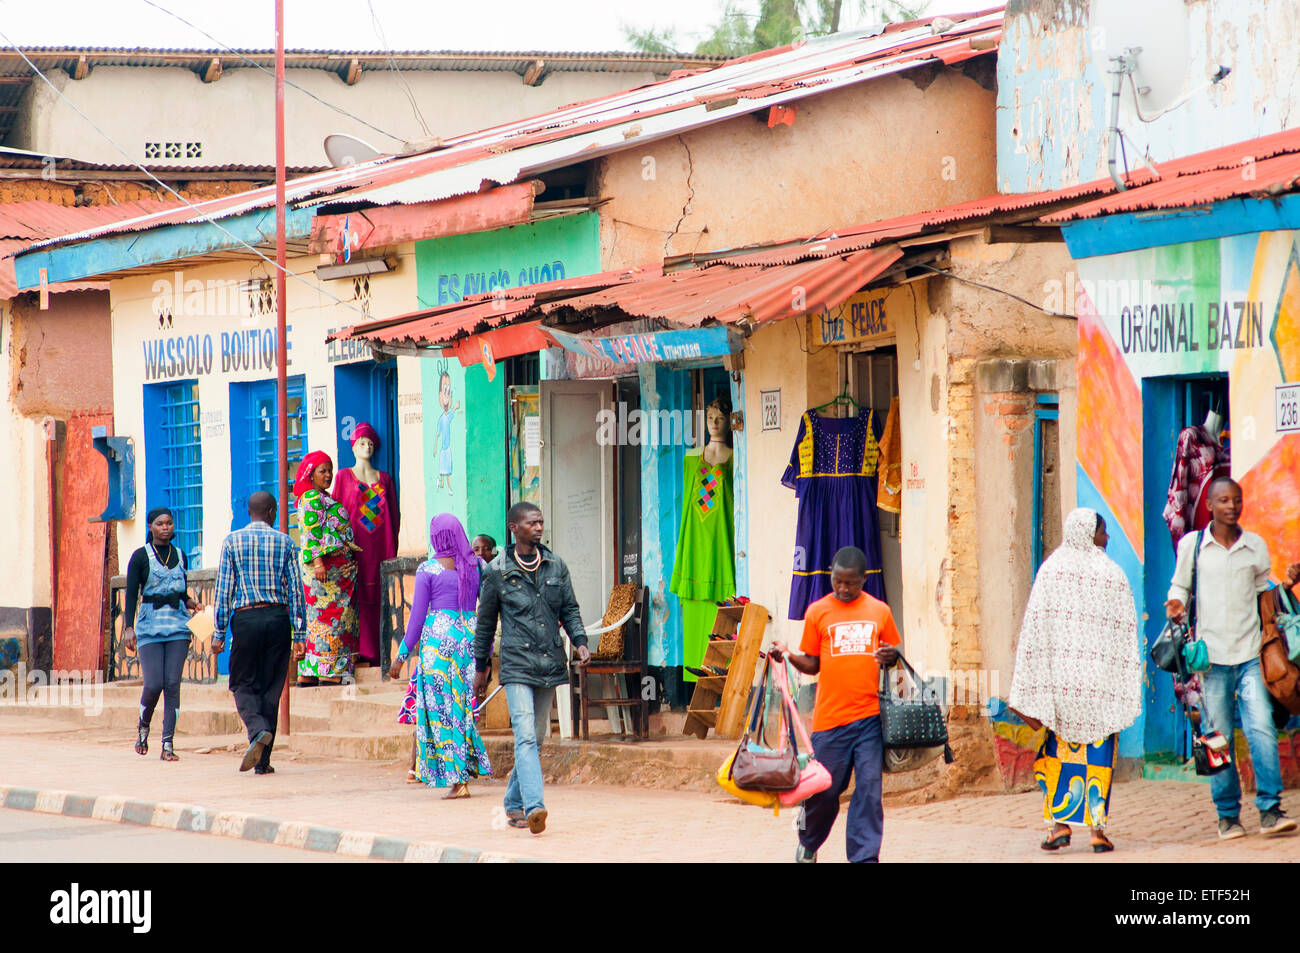 Scène de rue principale avec des boutiques aux couleurs lumineuses, Nyamirambo, Kigali, Rwanda Banque D'Images